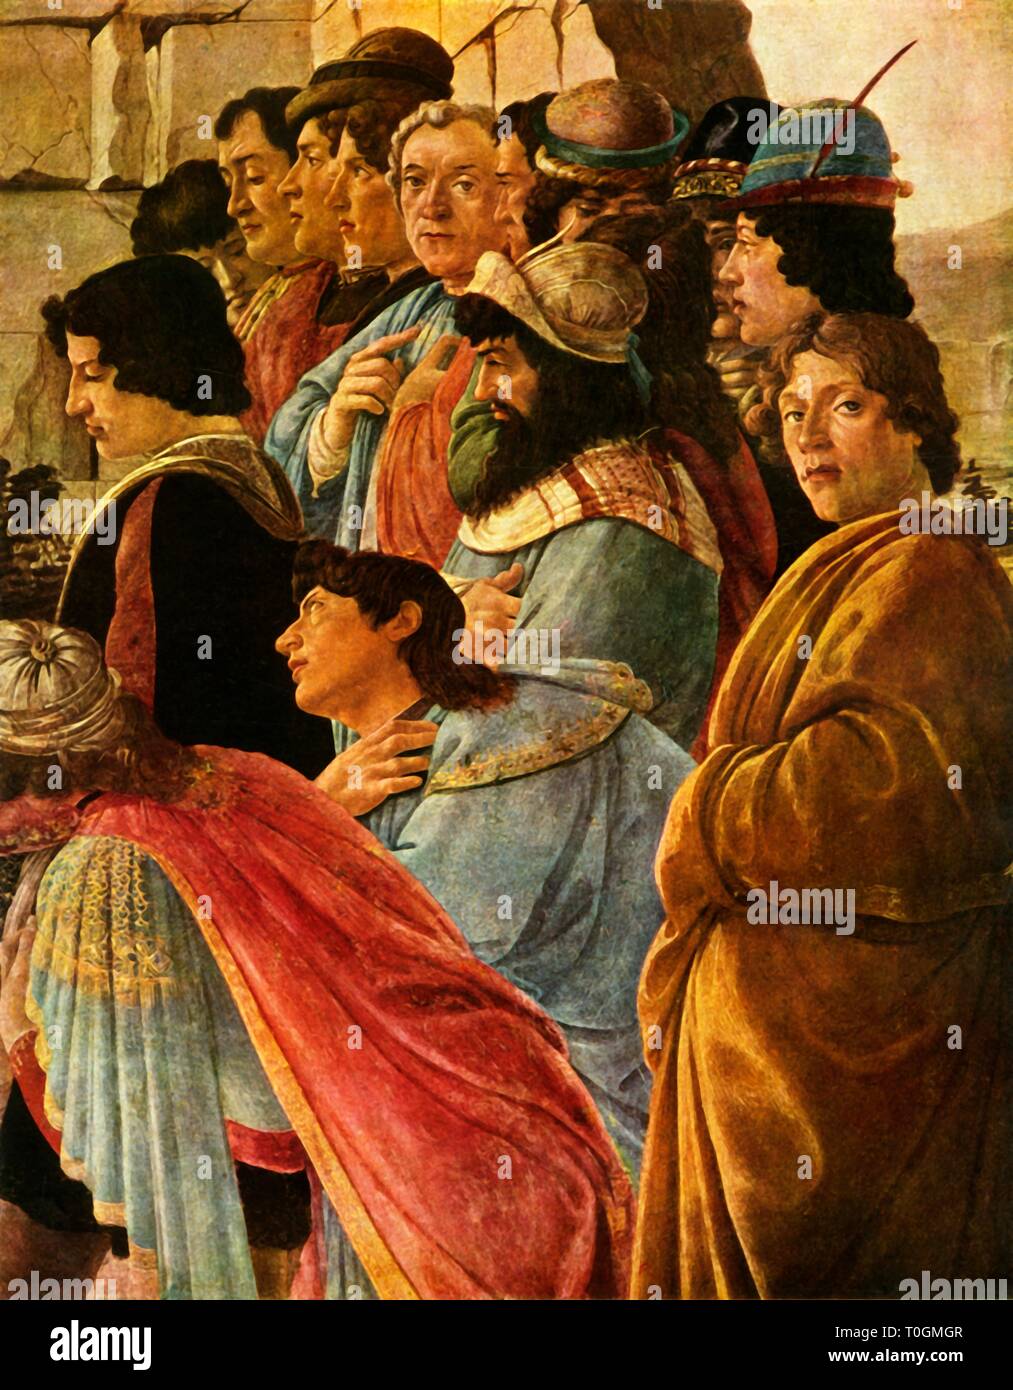 Dettagli dalla "Adorazione dei Magi" con autoritratto di Botticelli, 1475, (1937). Creatore: Sandro Botticelli. Foto Stock